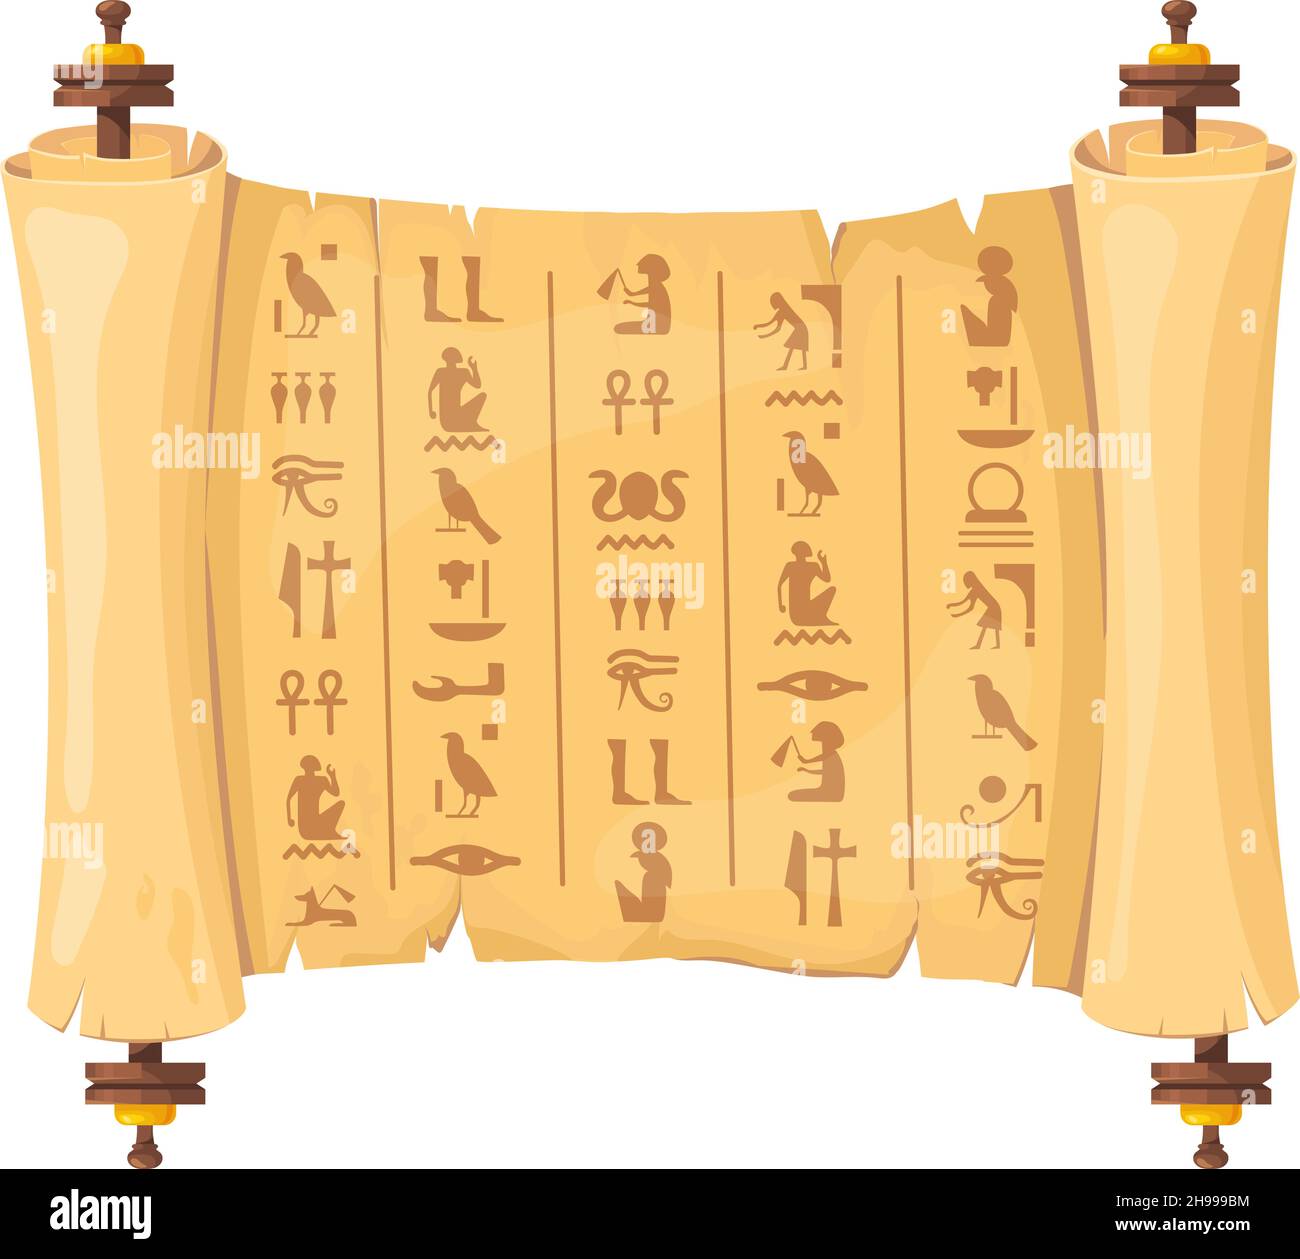 Papiro egizio scorrimento. Antichi geroglifi egizi su carta vecchia, egitto storico manoscritto archeologico con faraone e piramide, vettore cartoon pulito. Illustrazione di vecchio papiro antico Illustrazione Vettoriale